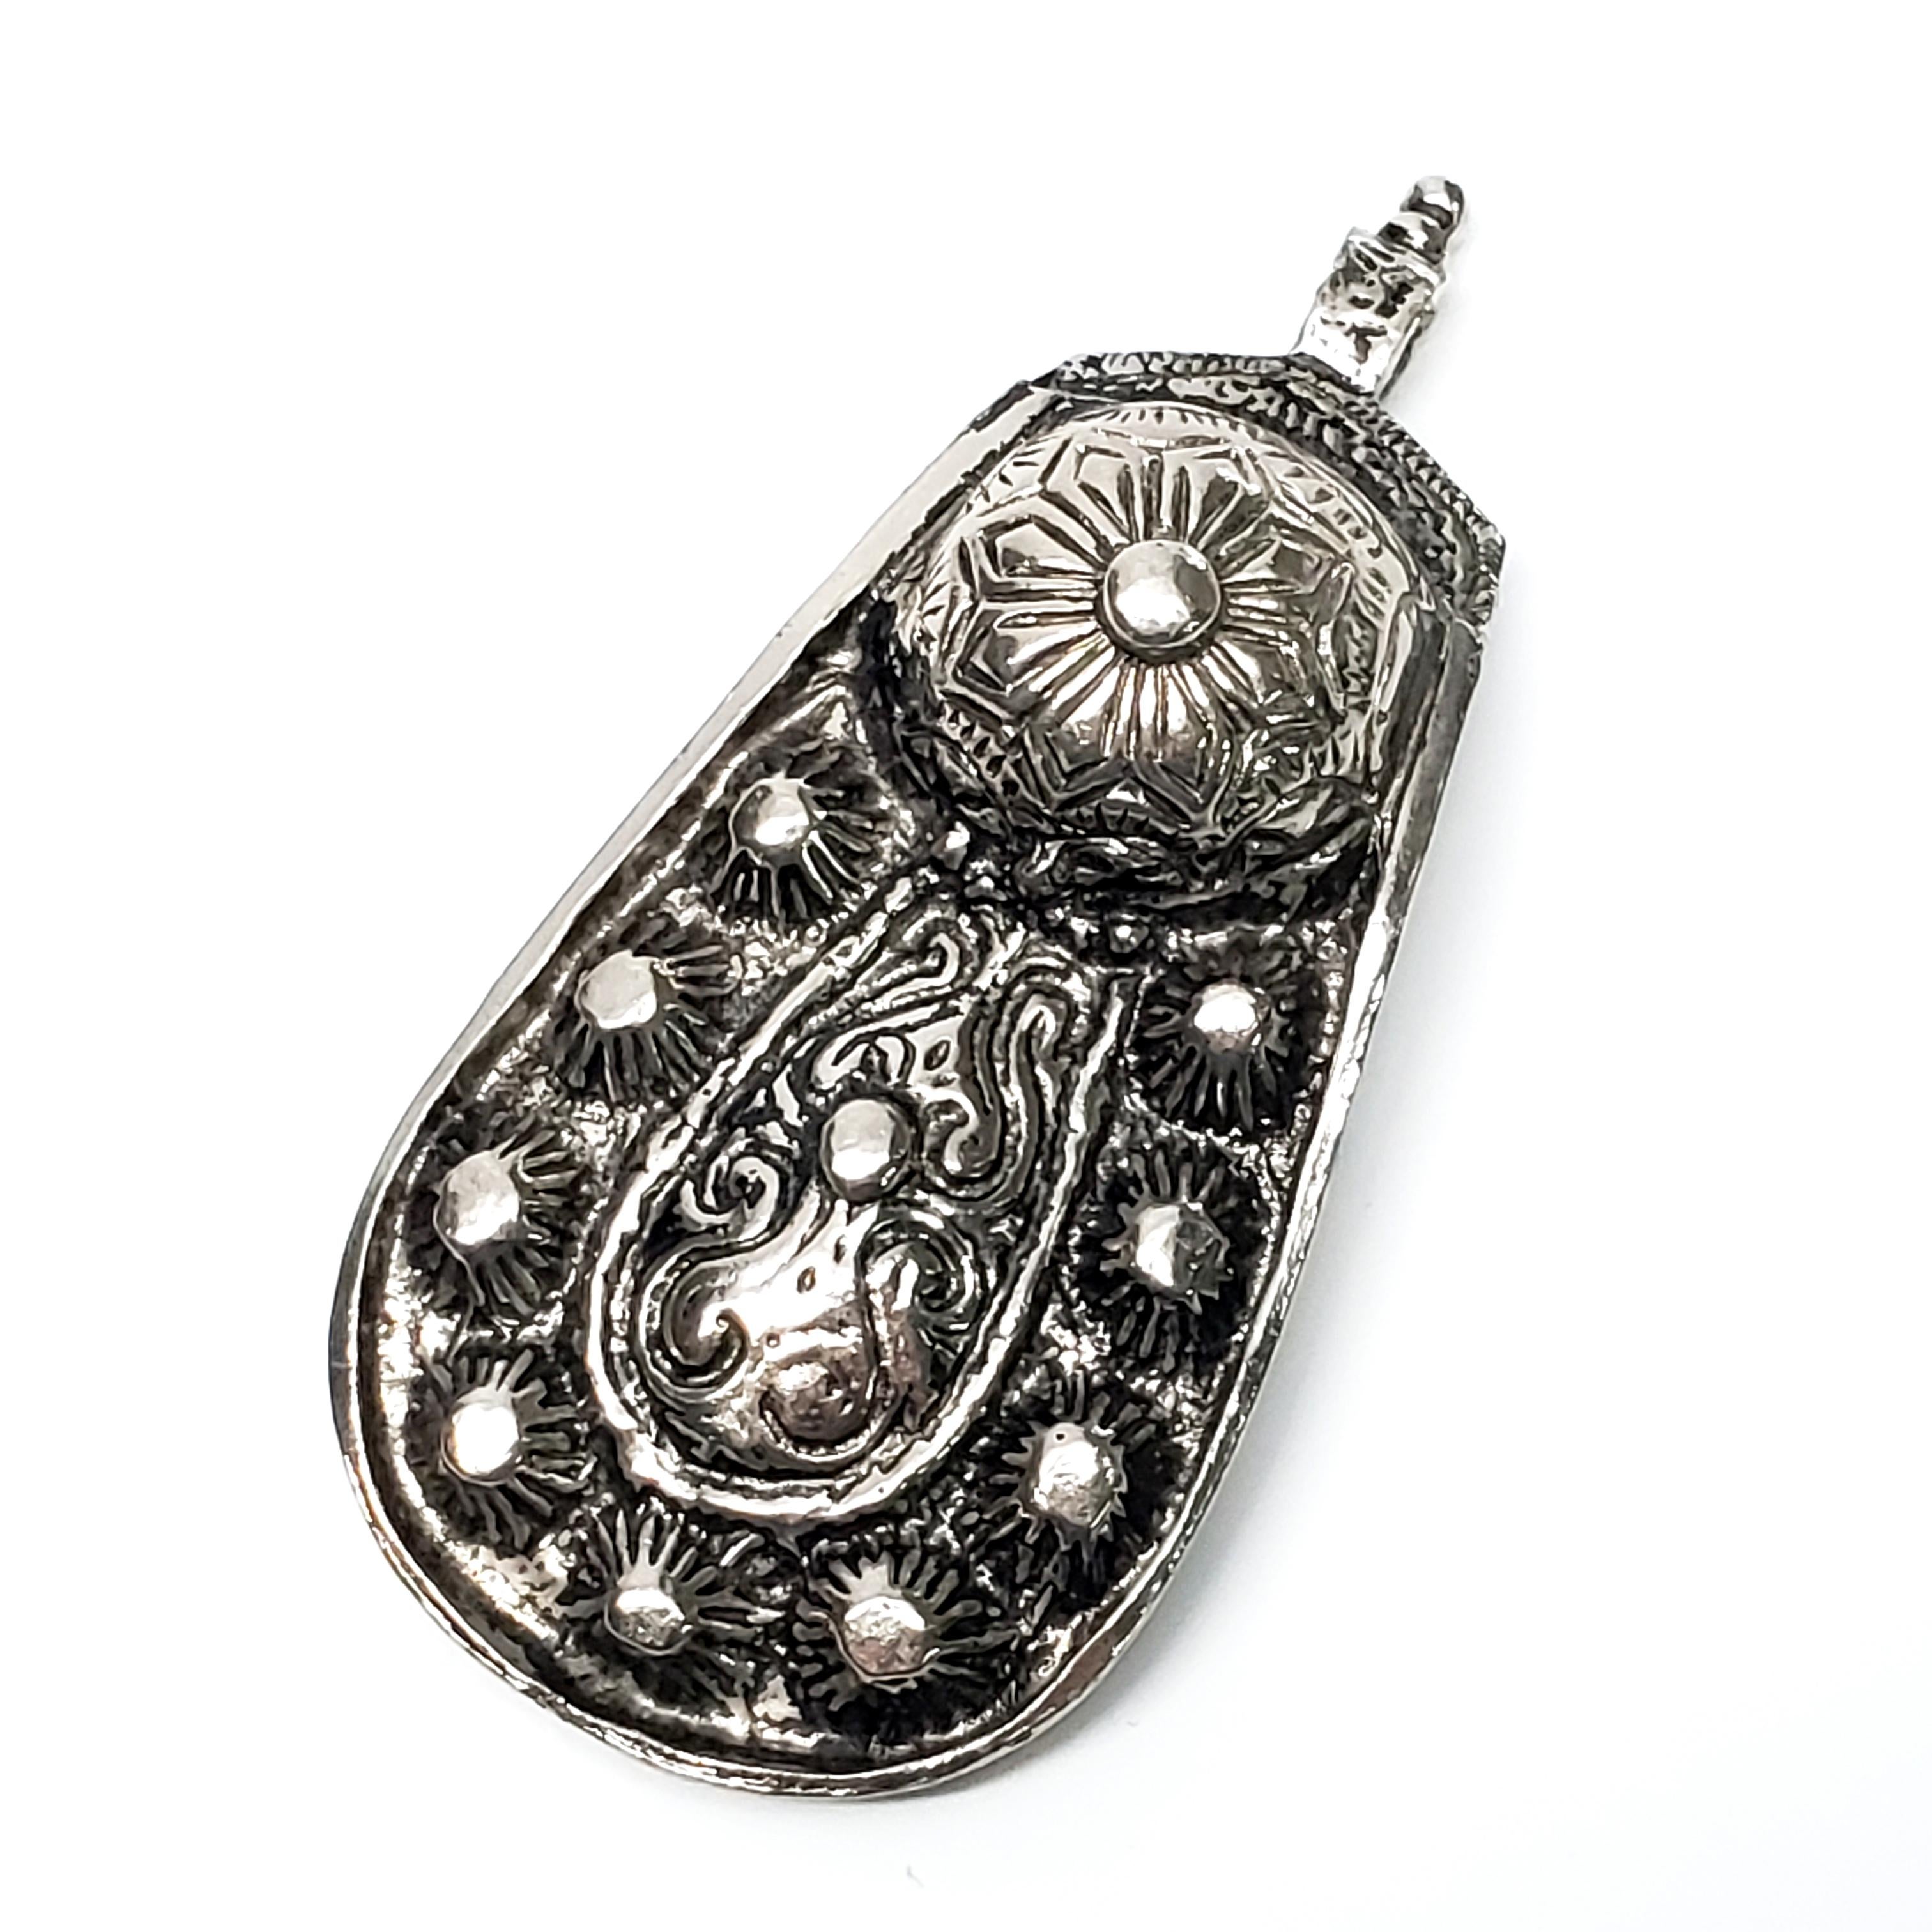 Women's Accessocraft Silver Tone Pendant For Sale